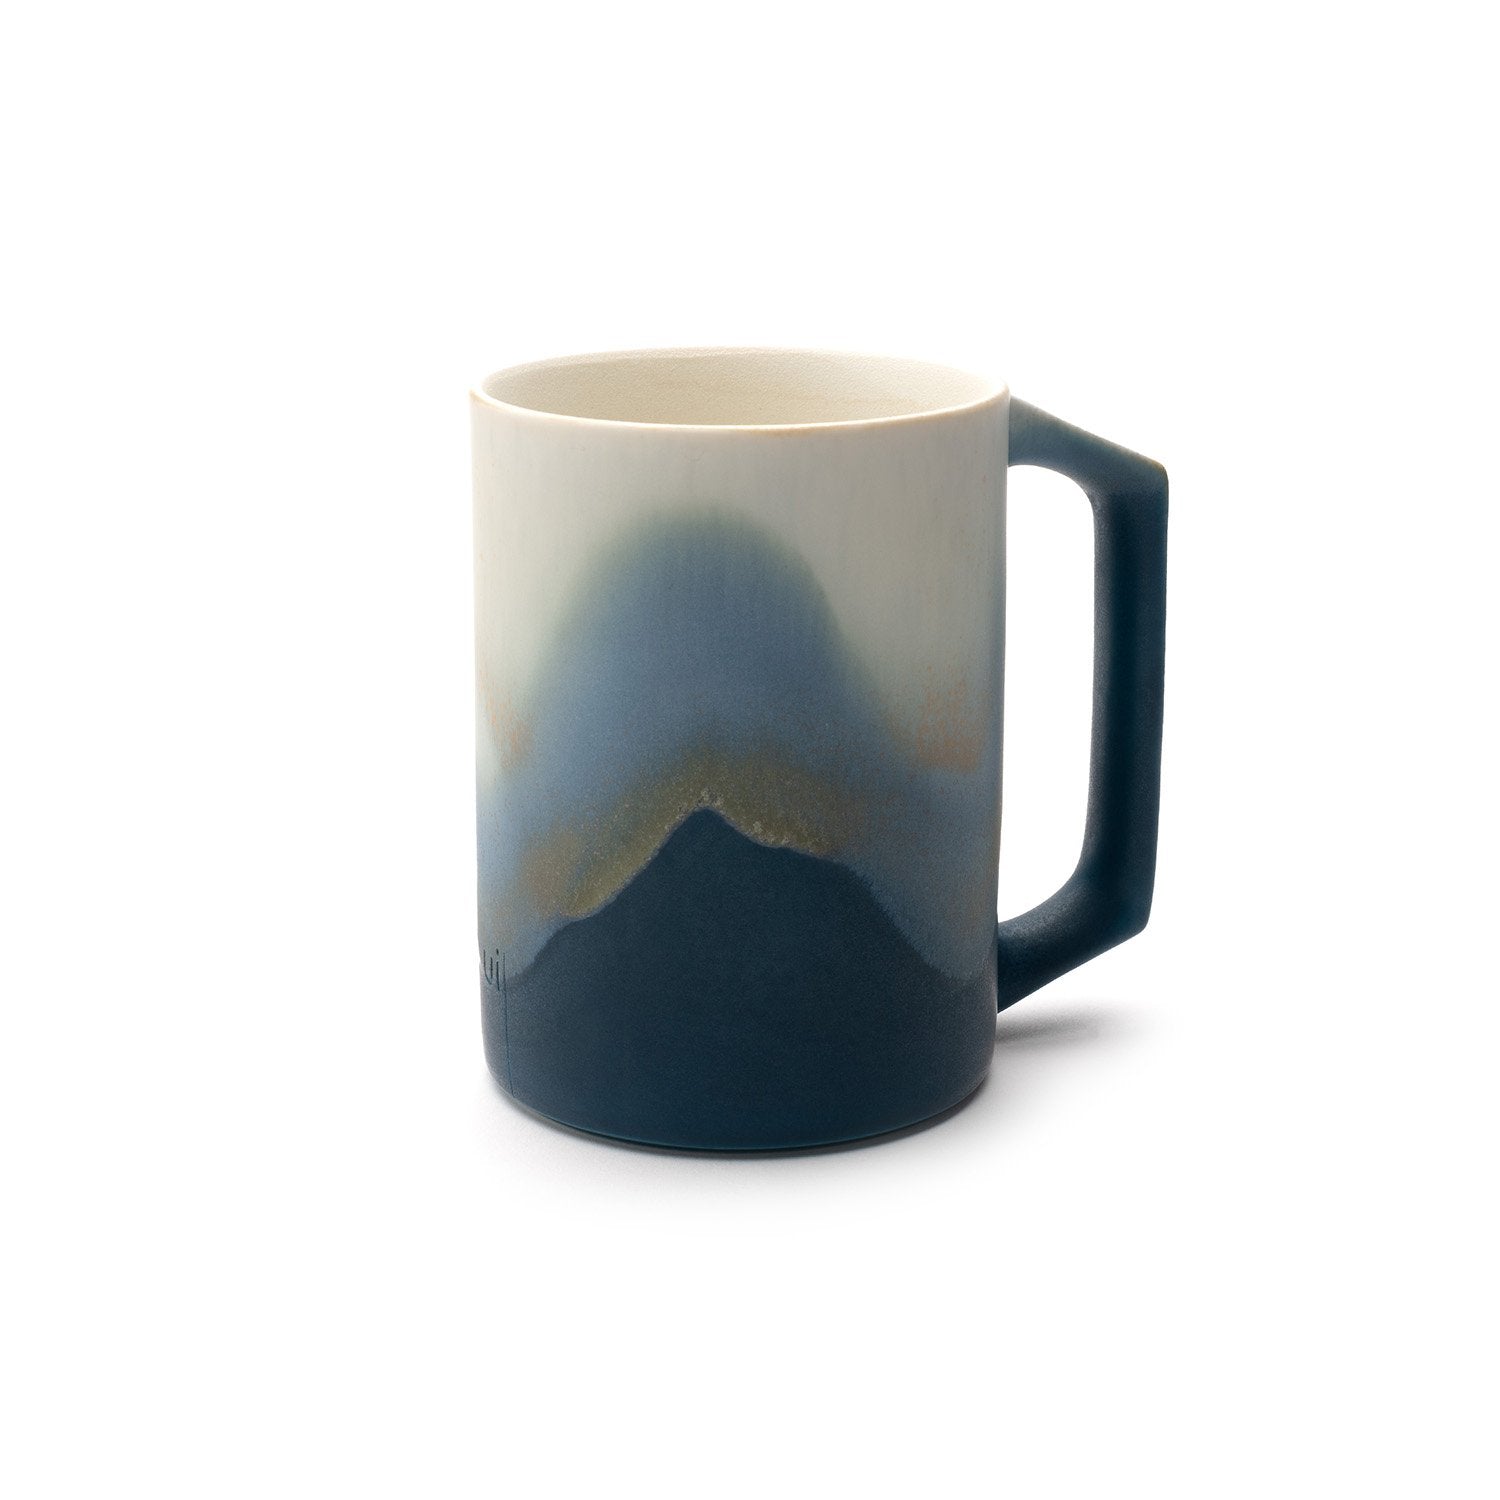 Blue Mug with design